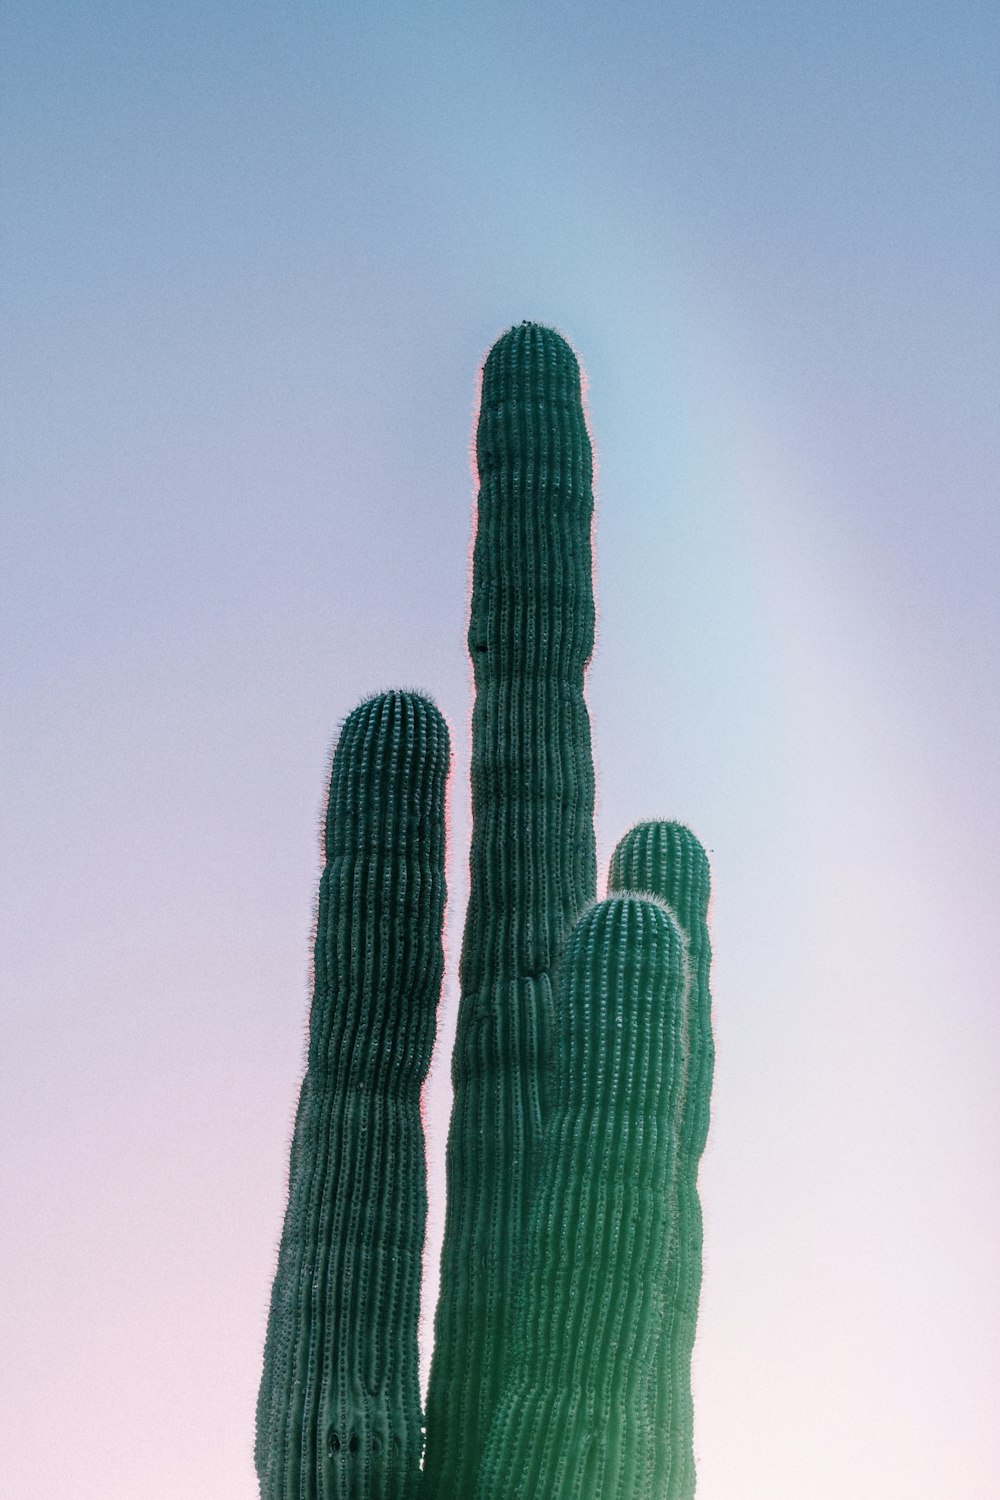 green cactus closeup photography